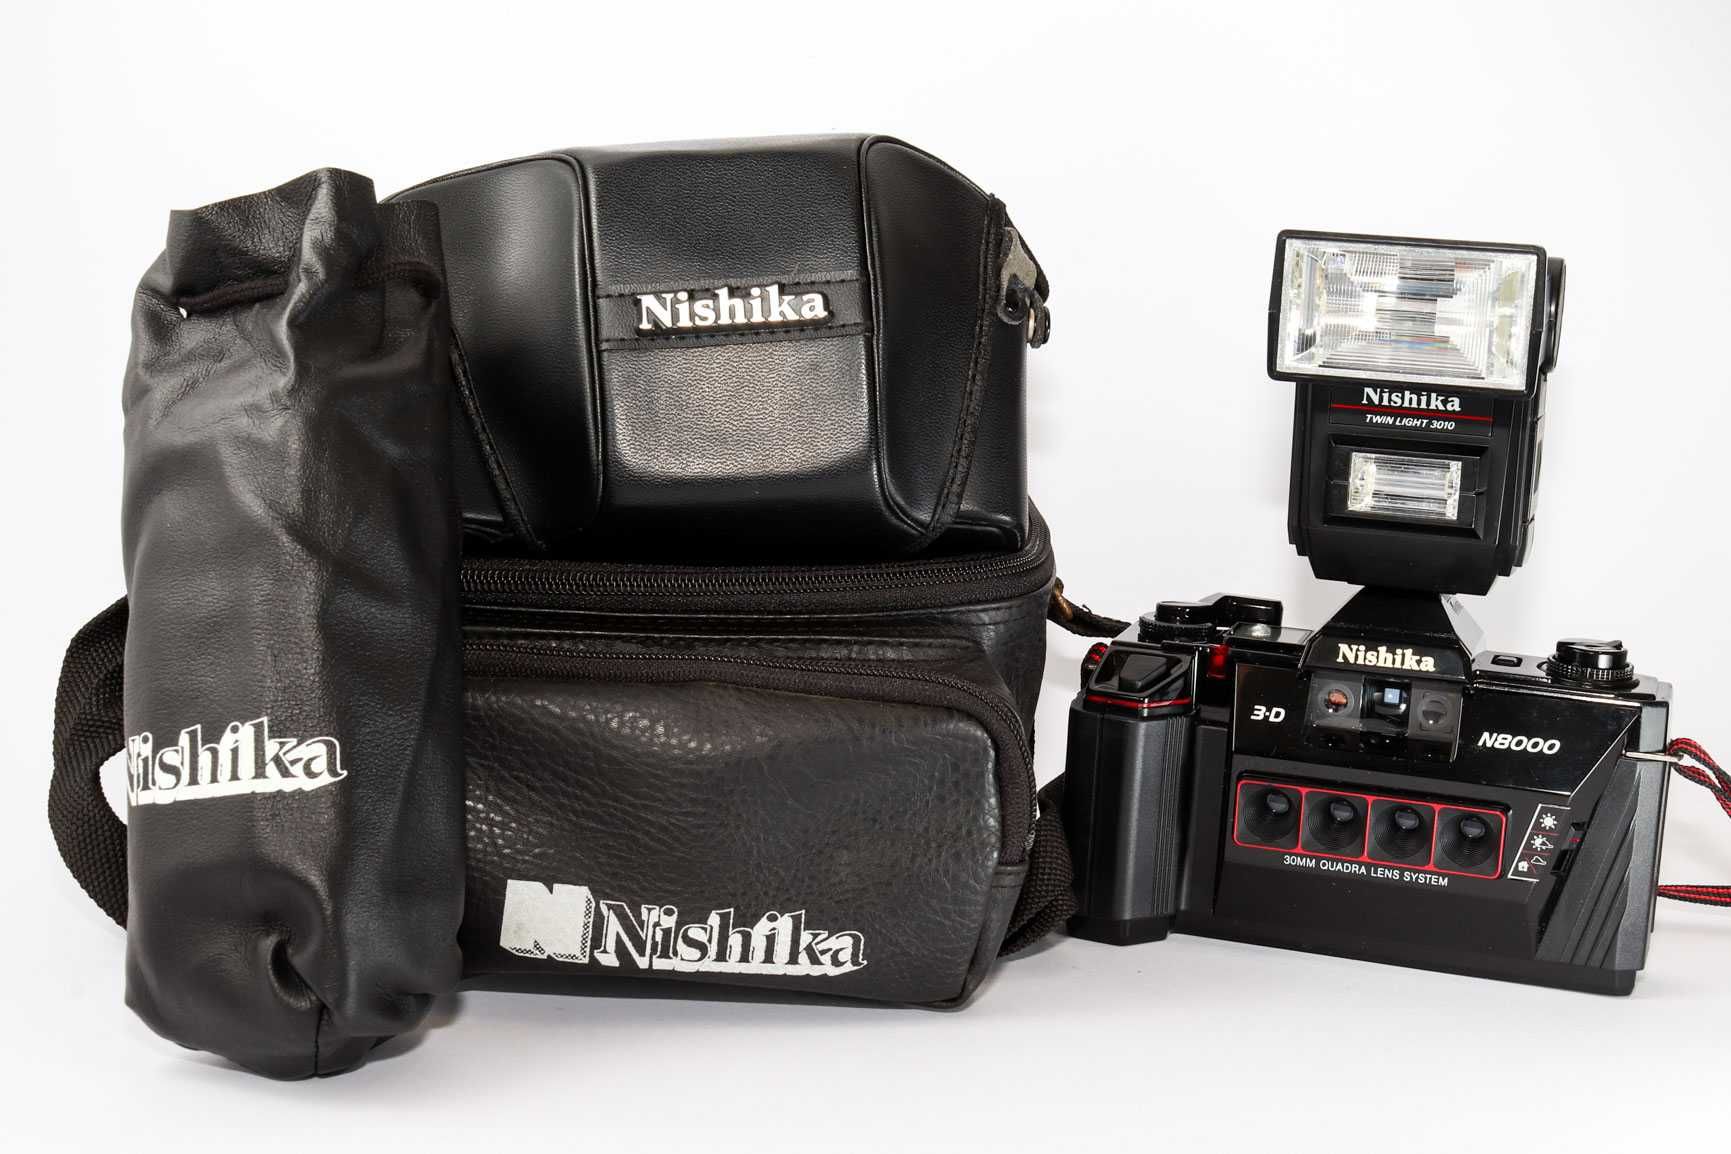 Nishika N 8000 aparat analogowy do gifów i zdjęć 3d na kliszę Nowy set